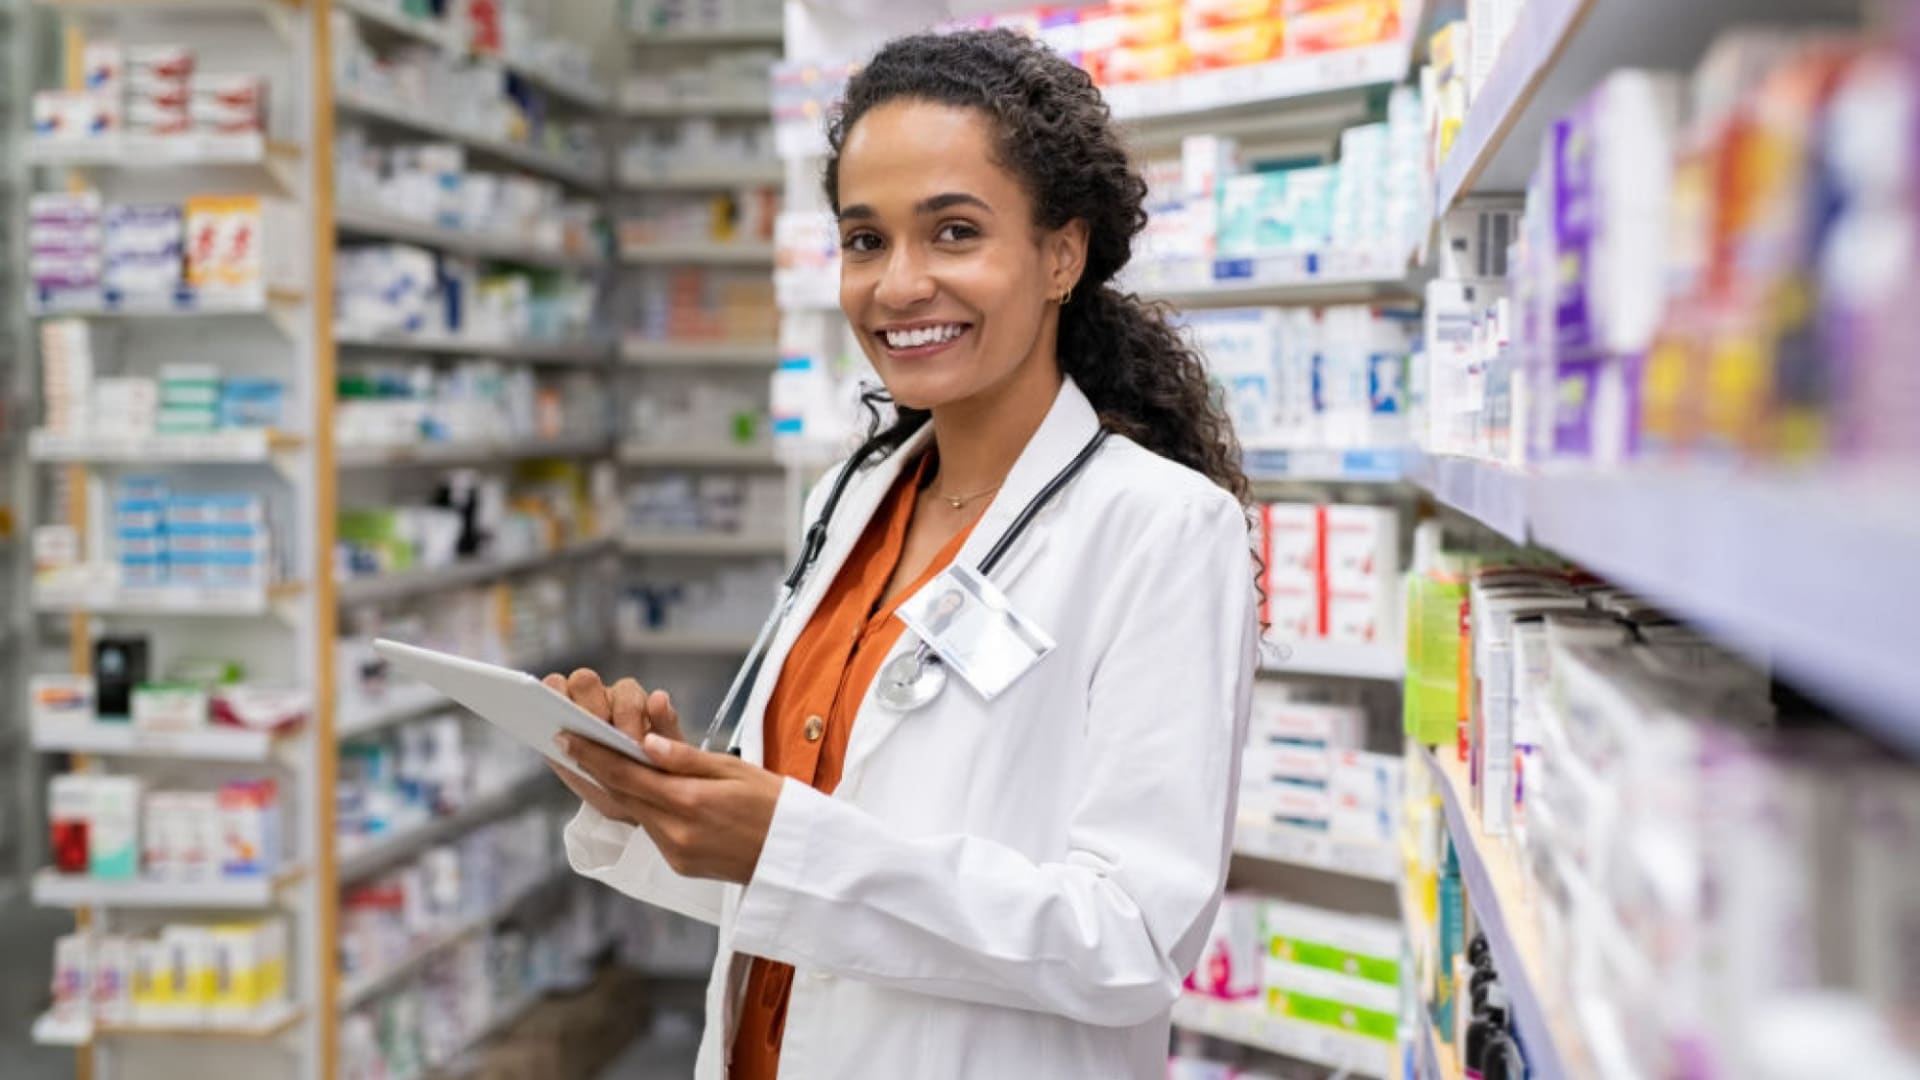 Independent Pharmacies Have Been Overlooked